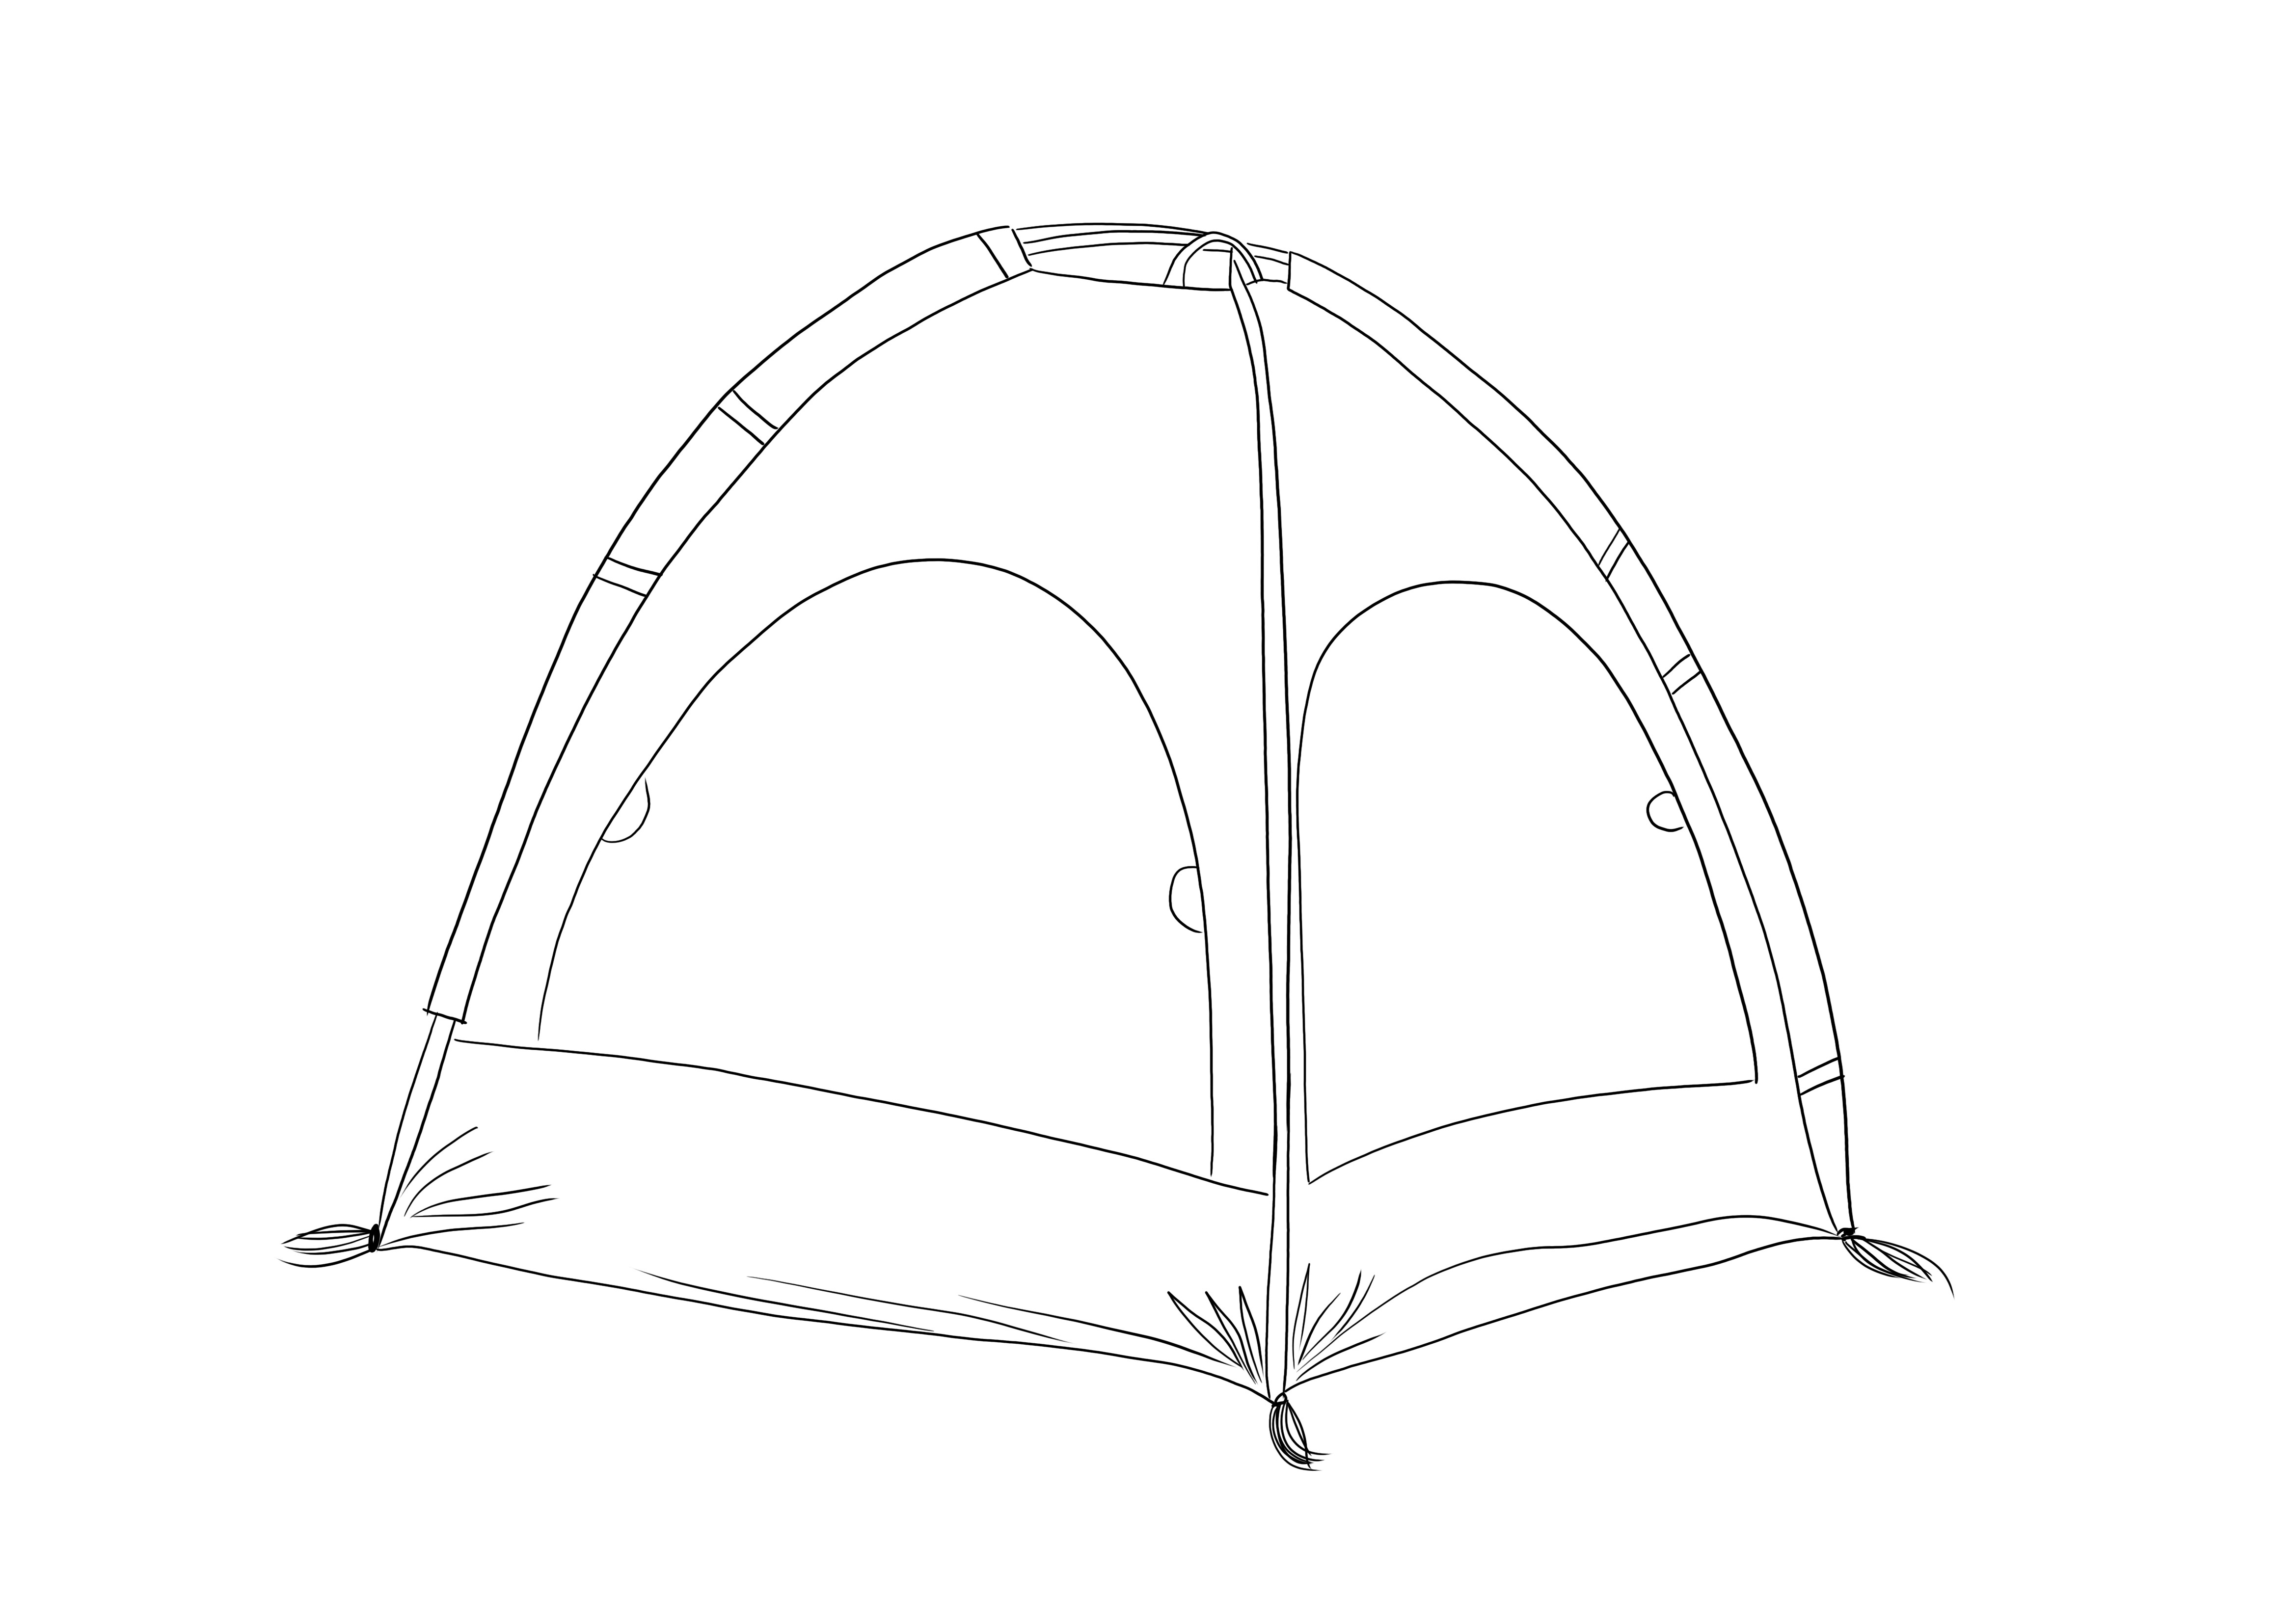 Kamp Çadırı, yazdırmak veya sonraki görüntü için kaydetmek üzere ücretsiz olarak yazdırılabilir